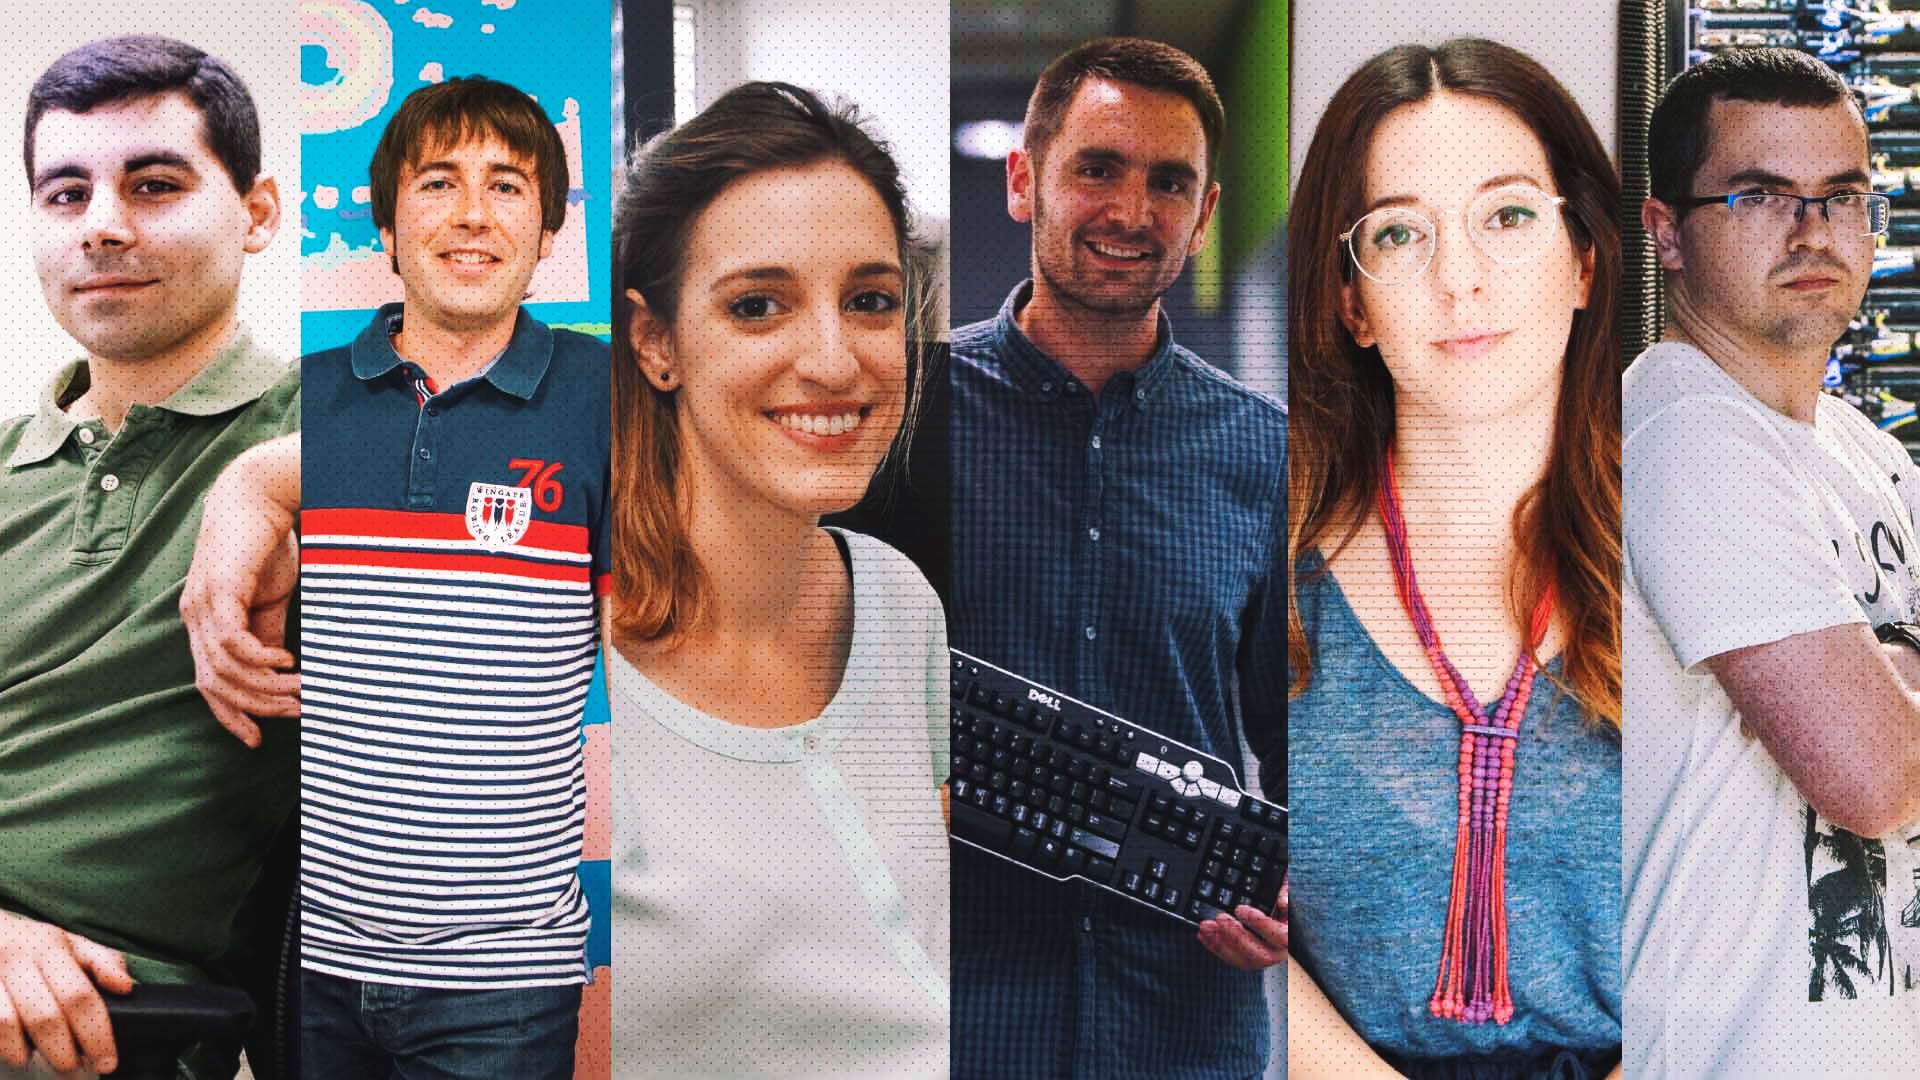 Estos son los 6 jóvenes brillantes que encabezan la revolución tecnológica en España